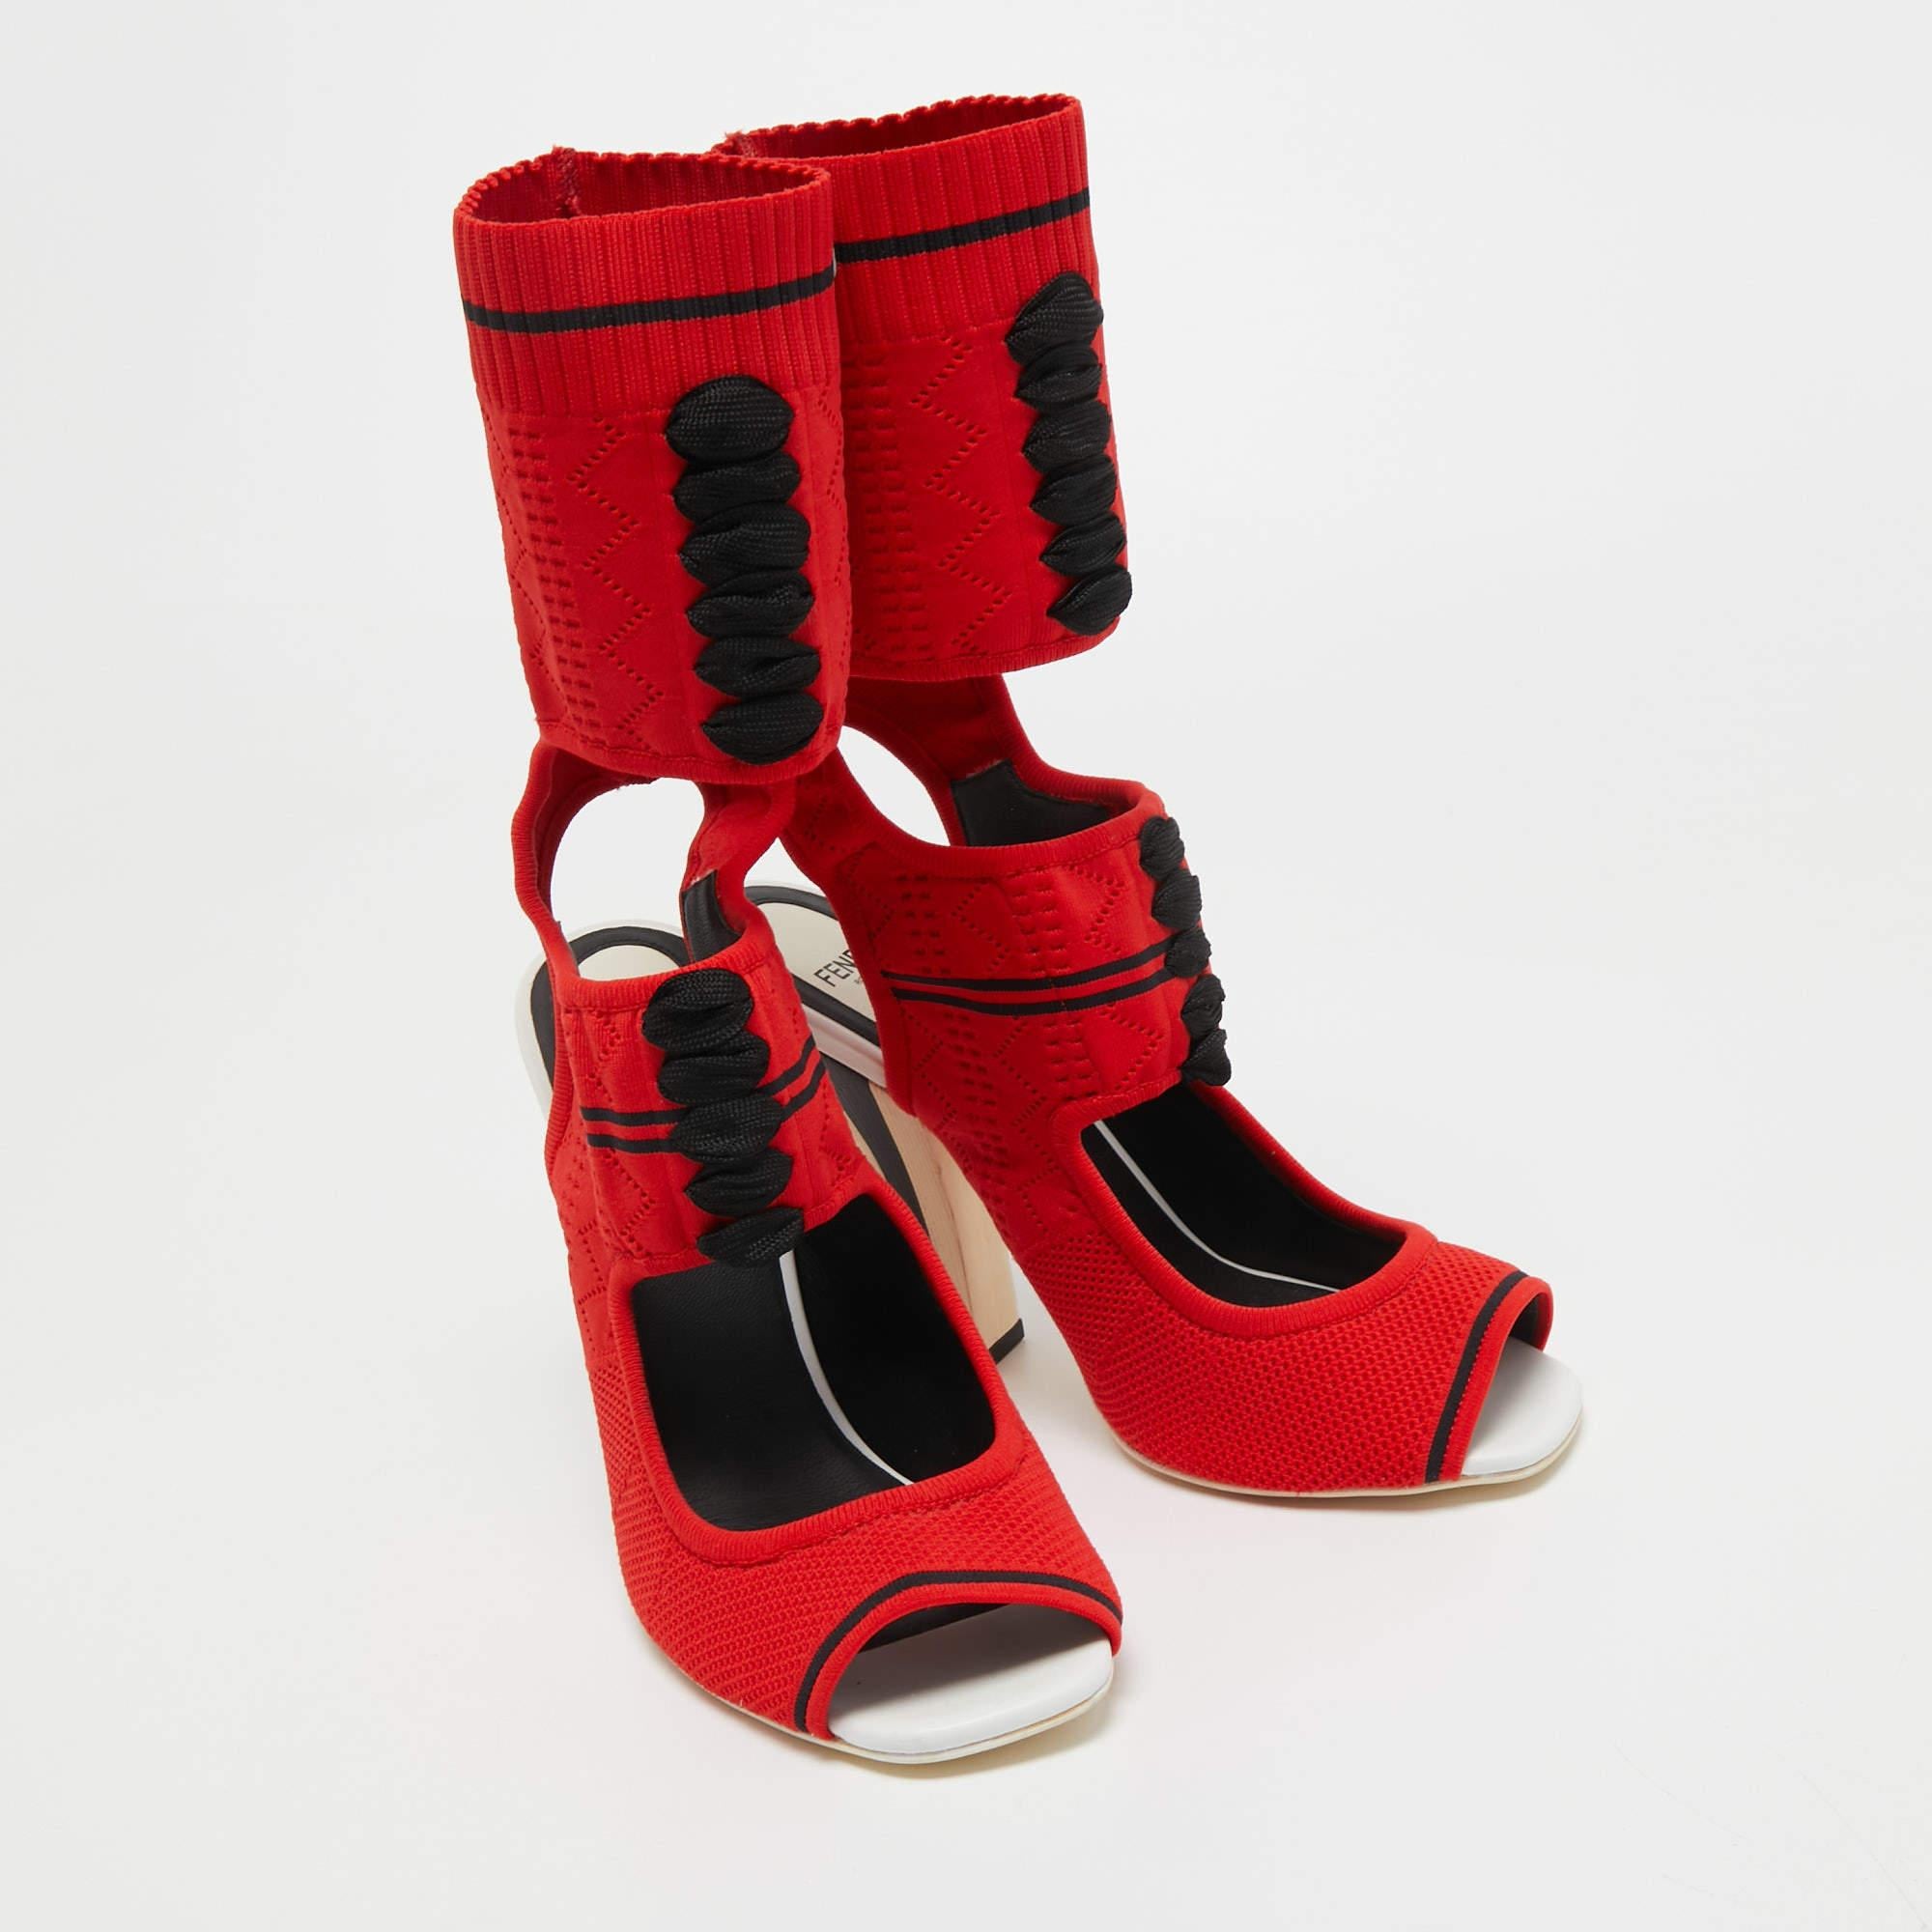 Confectionnées en Italie, les sandales Fendi sont à la fois élégantes, audacieuses et sportives. Elles sont en maille et présentent une silhouette semblable à une chaussette, ornée de lacets, de bouts ouverts et d'une coupe ajustée. Ces bottes sont